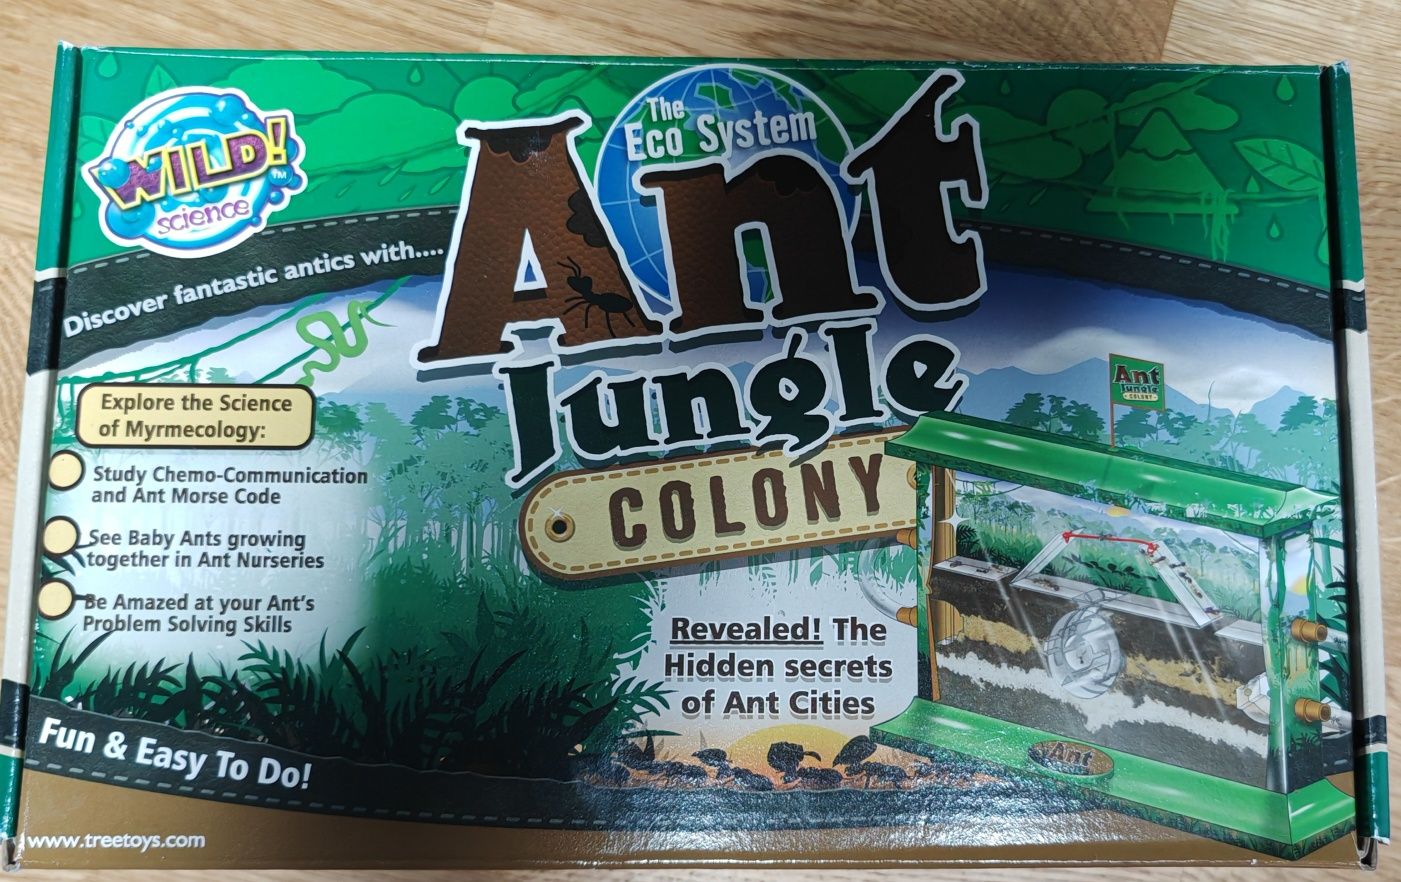 Ant Jungle colony, Eco system dla mrówek, dom dla mrówek. Tree toys